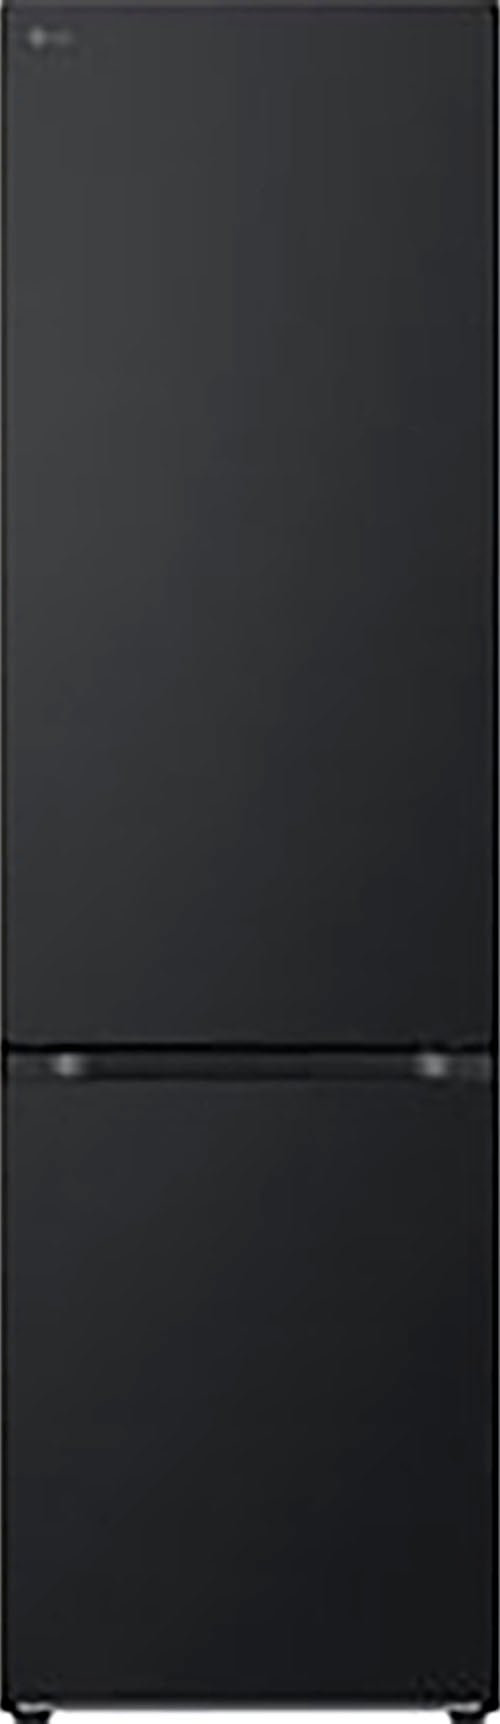 LG Kühl-/Gefrierkombination »GBV3200CEP«, GBV3200CEP, 203 cm hoch, 59,5 cm breit